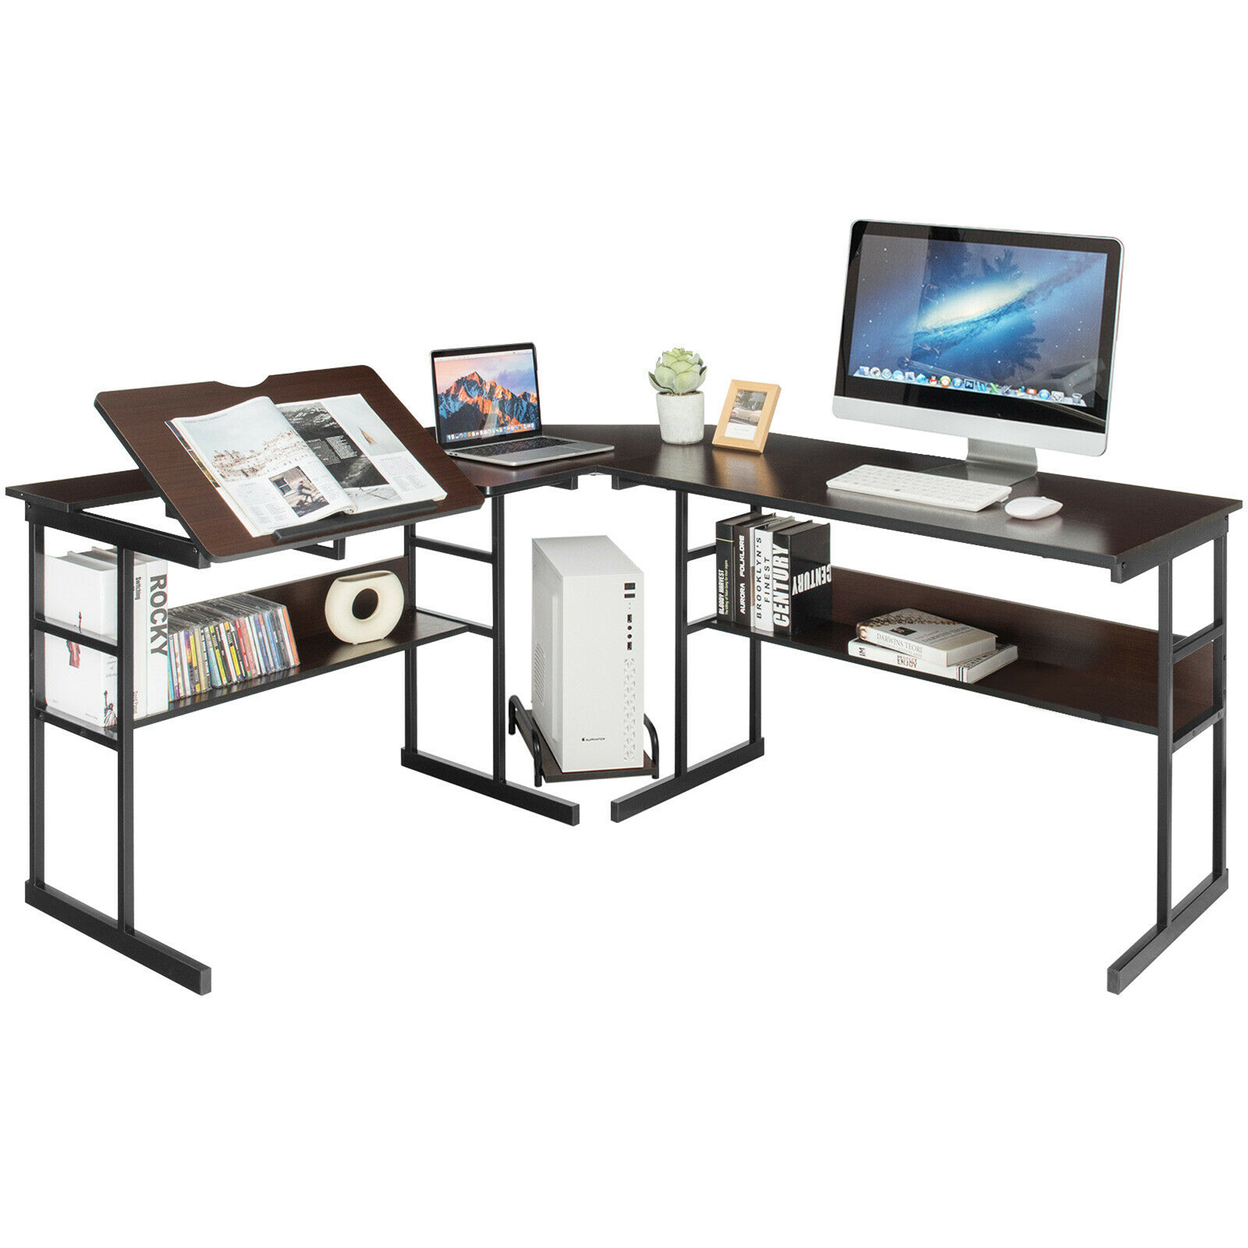 L-Shaped Computer Desk Drafting Table Workstation W/ Tiltable Tabletop - Espresso